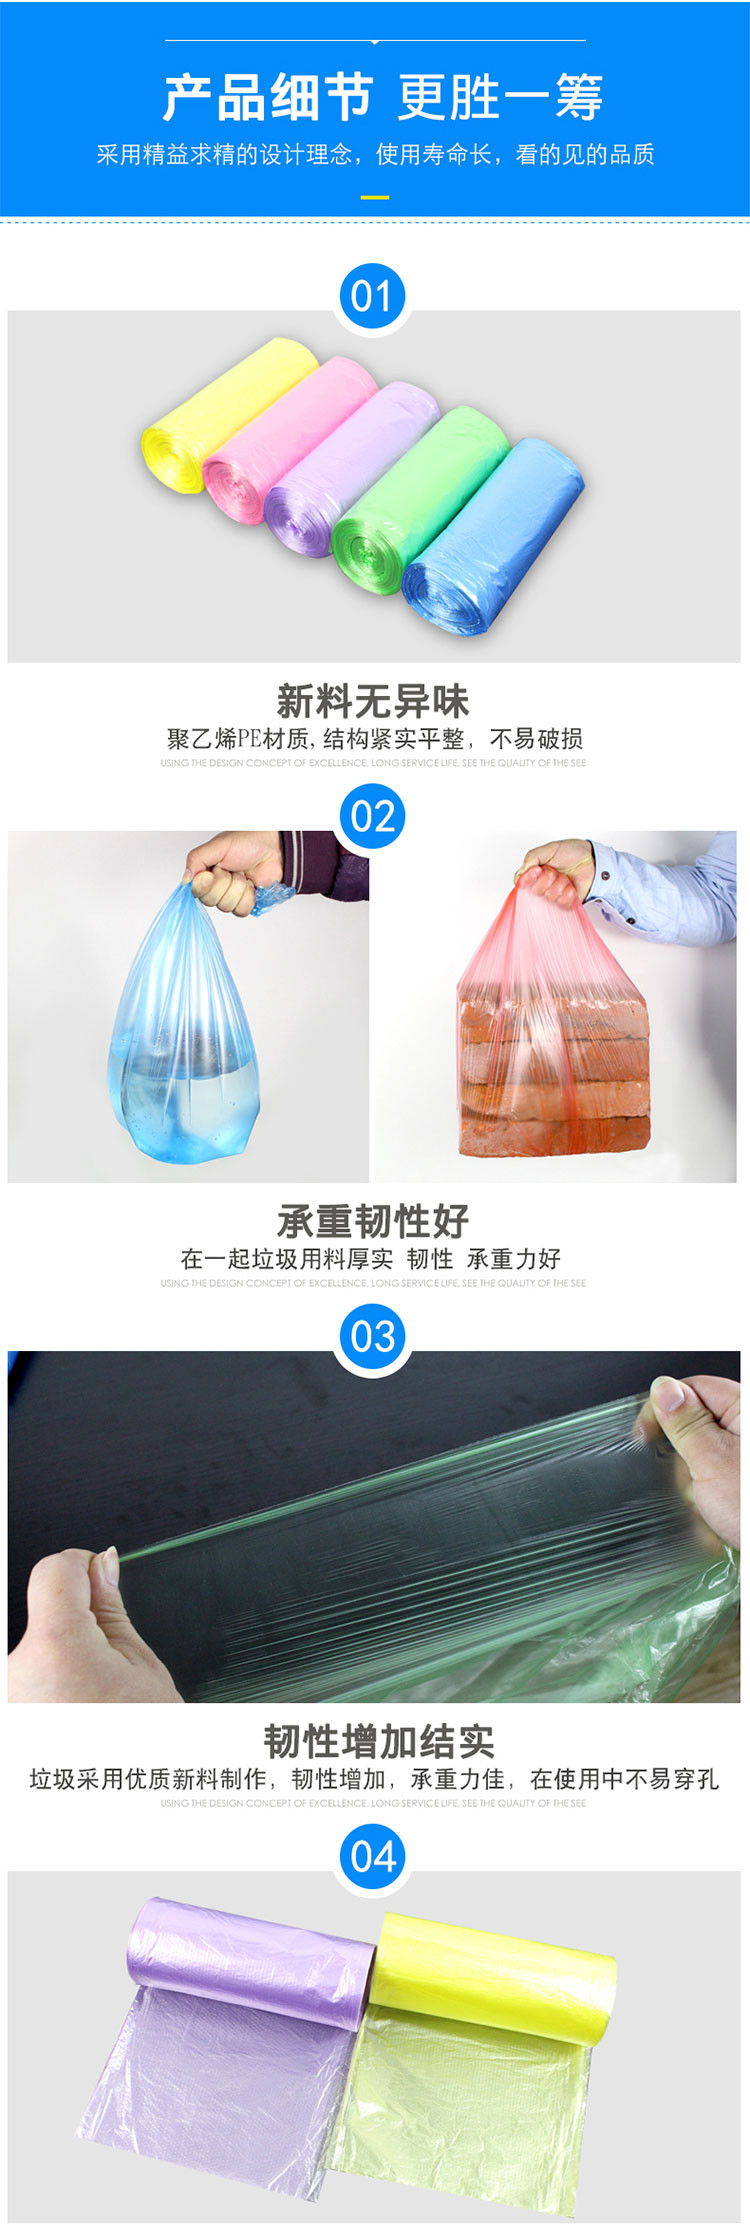 滁州特产-一次性垃圾袋五包装9.9安徽省内包邮